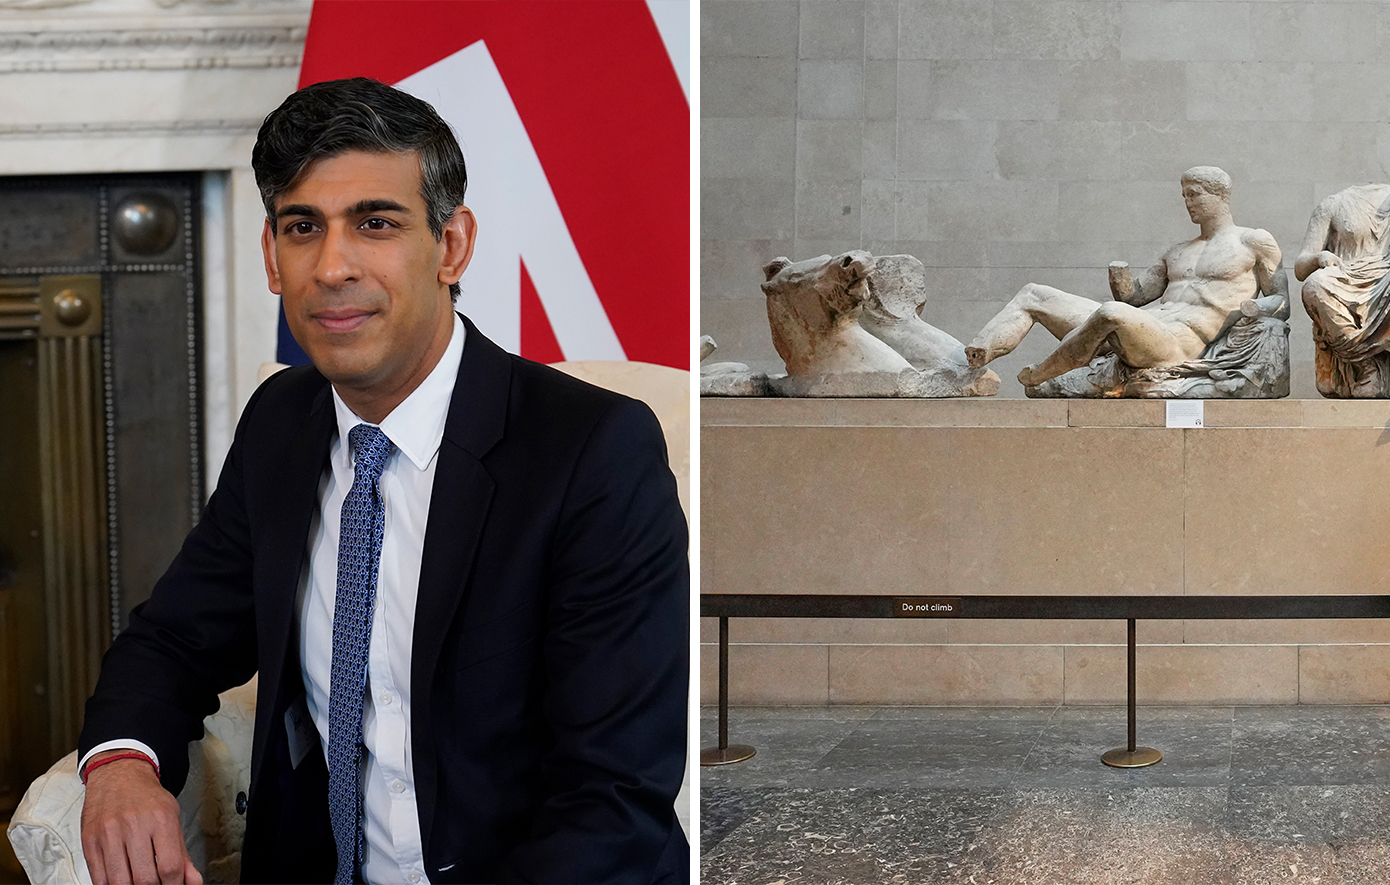 Ο Σούνακ έβαλε «χέρι» στο Βρετανικό Μουσείο – Προσπάθησε να επηρεάσει παράτυπα την επιλογή του νέου διευθυντή